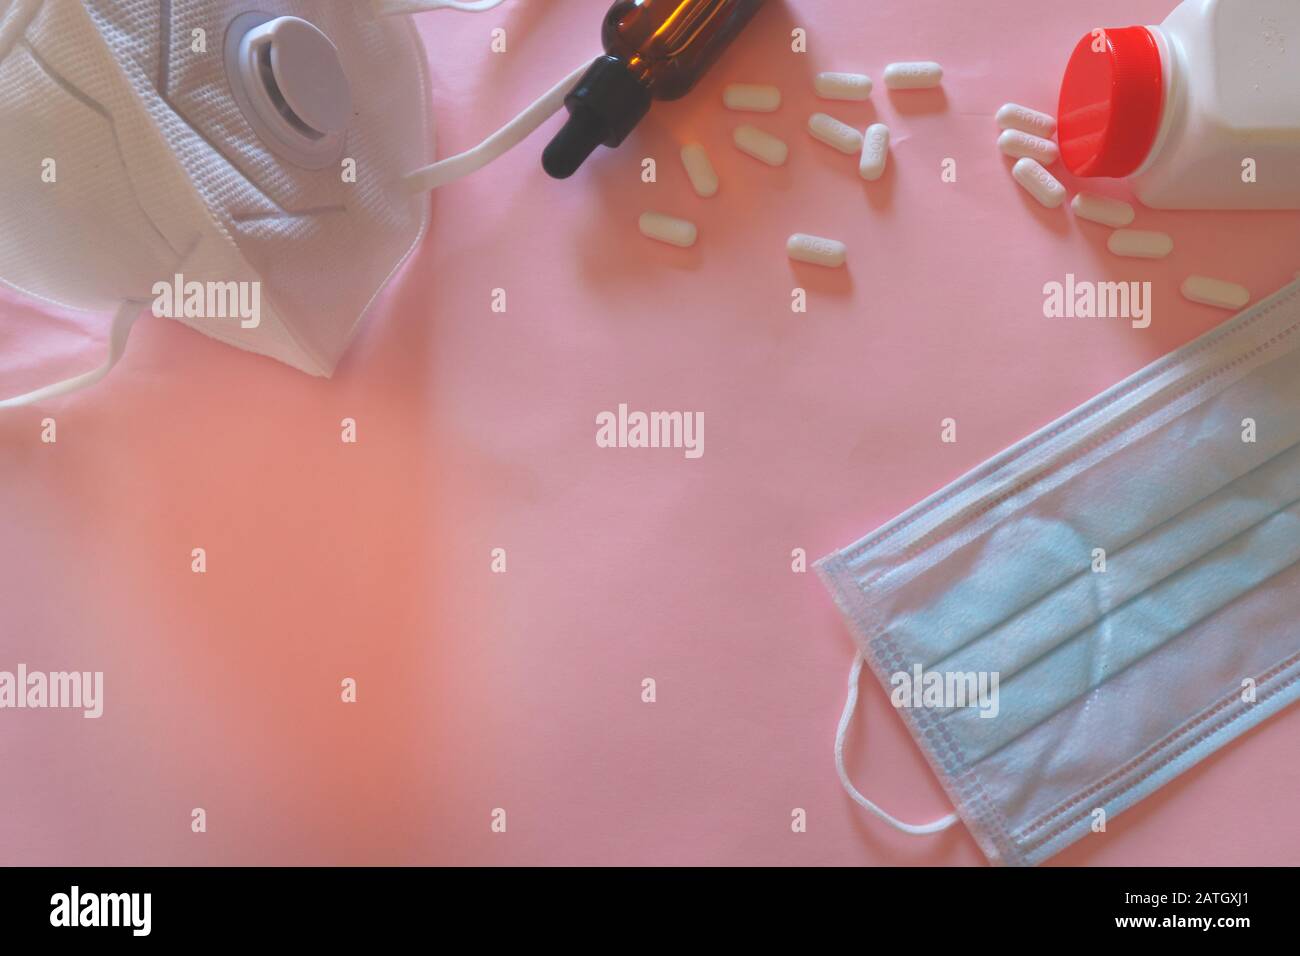 Medizinische Maske und Vitamin-C-Pillen auf pinkfarbenem Hintergrund, um das Konzept der Infektionskontrolle, des neuartigen Coronavirus (2019-nCoV)-Ausbruchs und der globalen Heilung zu zeigen Stockfoto